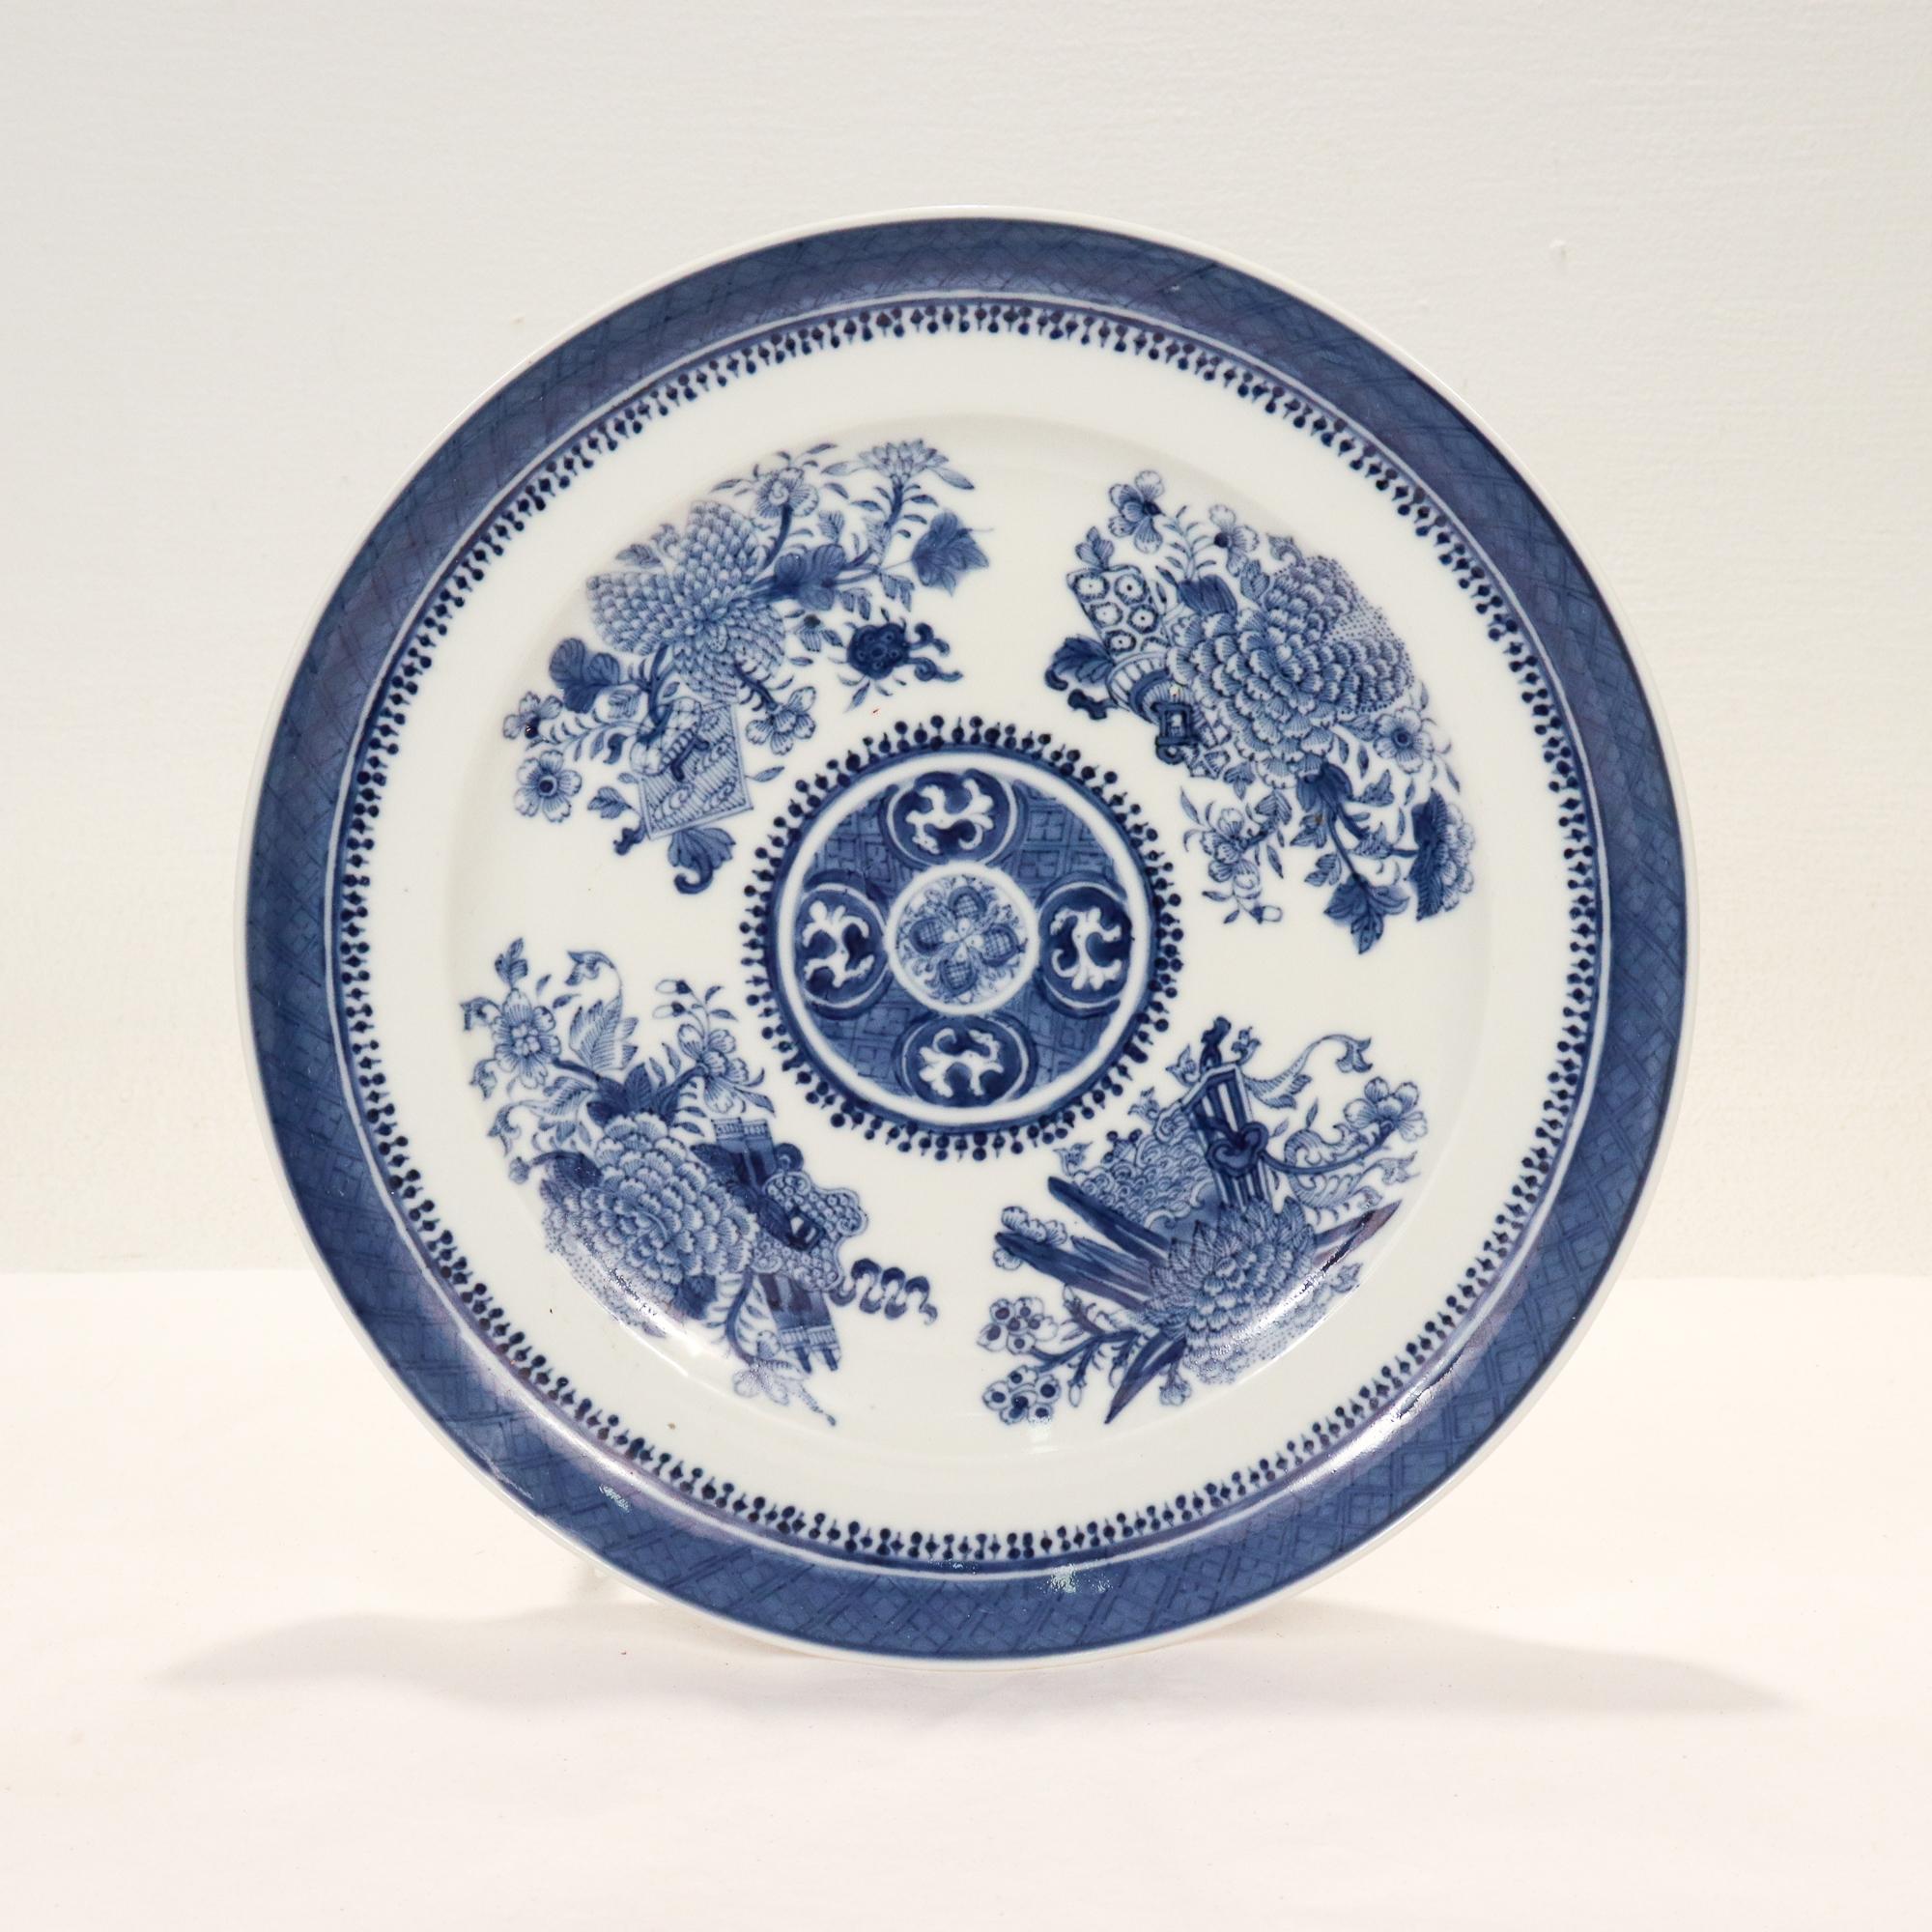 Belle assiette ancienne en porcelaine d'exportation chinoise à motif Fitzhugh.

Décoré en bleu sous glaçure de motifs floraux sur la face, et d'une bordure sur le bord avec un motif répétitif de losanges en frettes.

Tout simplement une grande